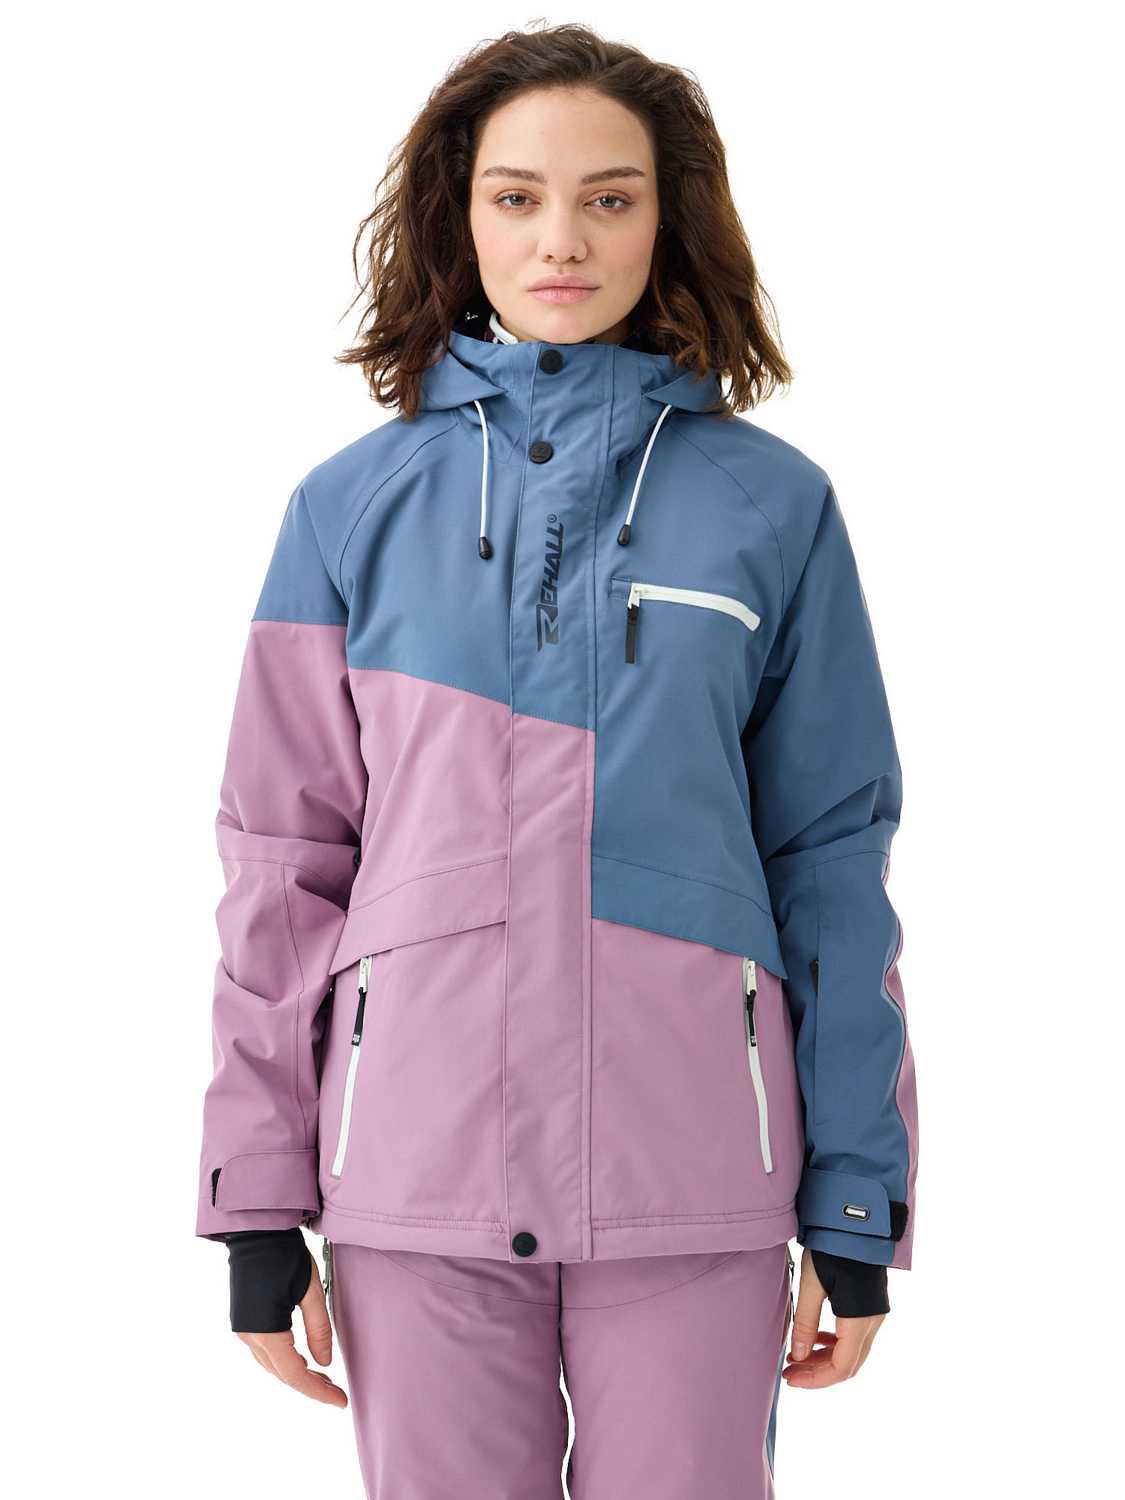 Куртка сноубордическая Rehall Dyna-R Lavender